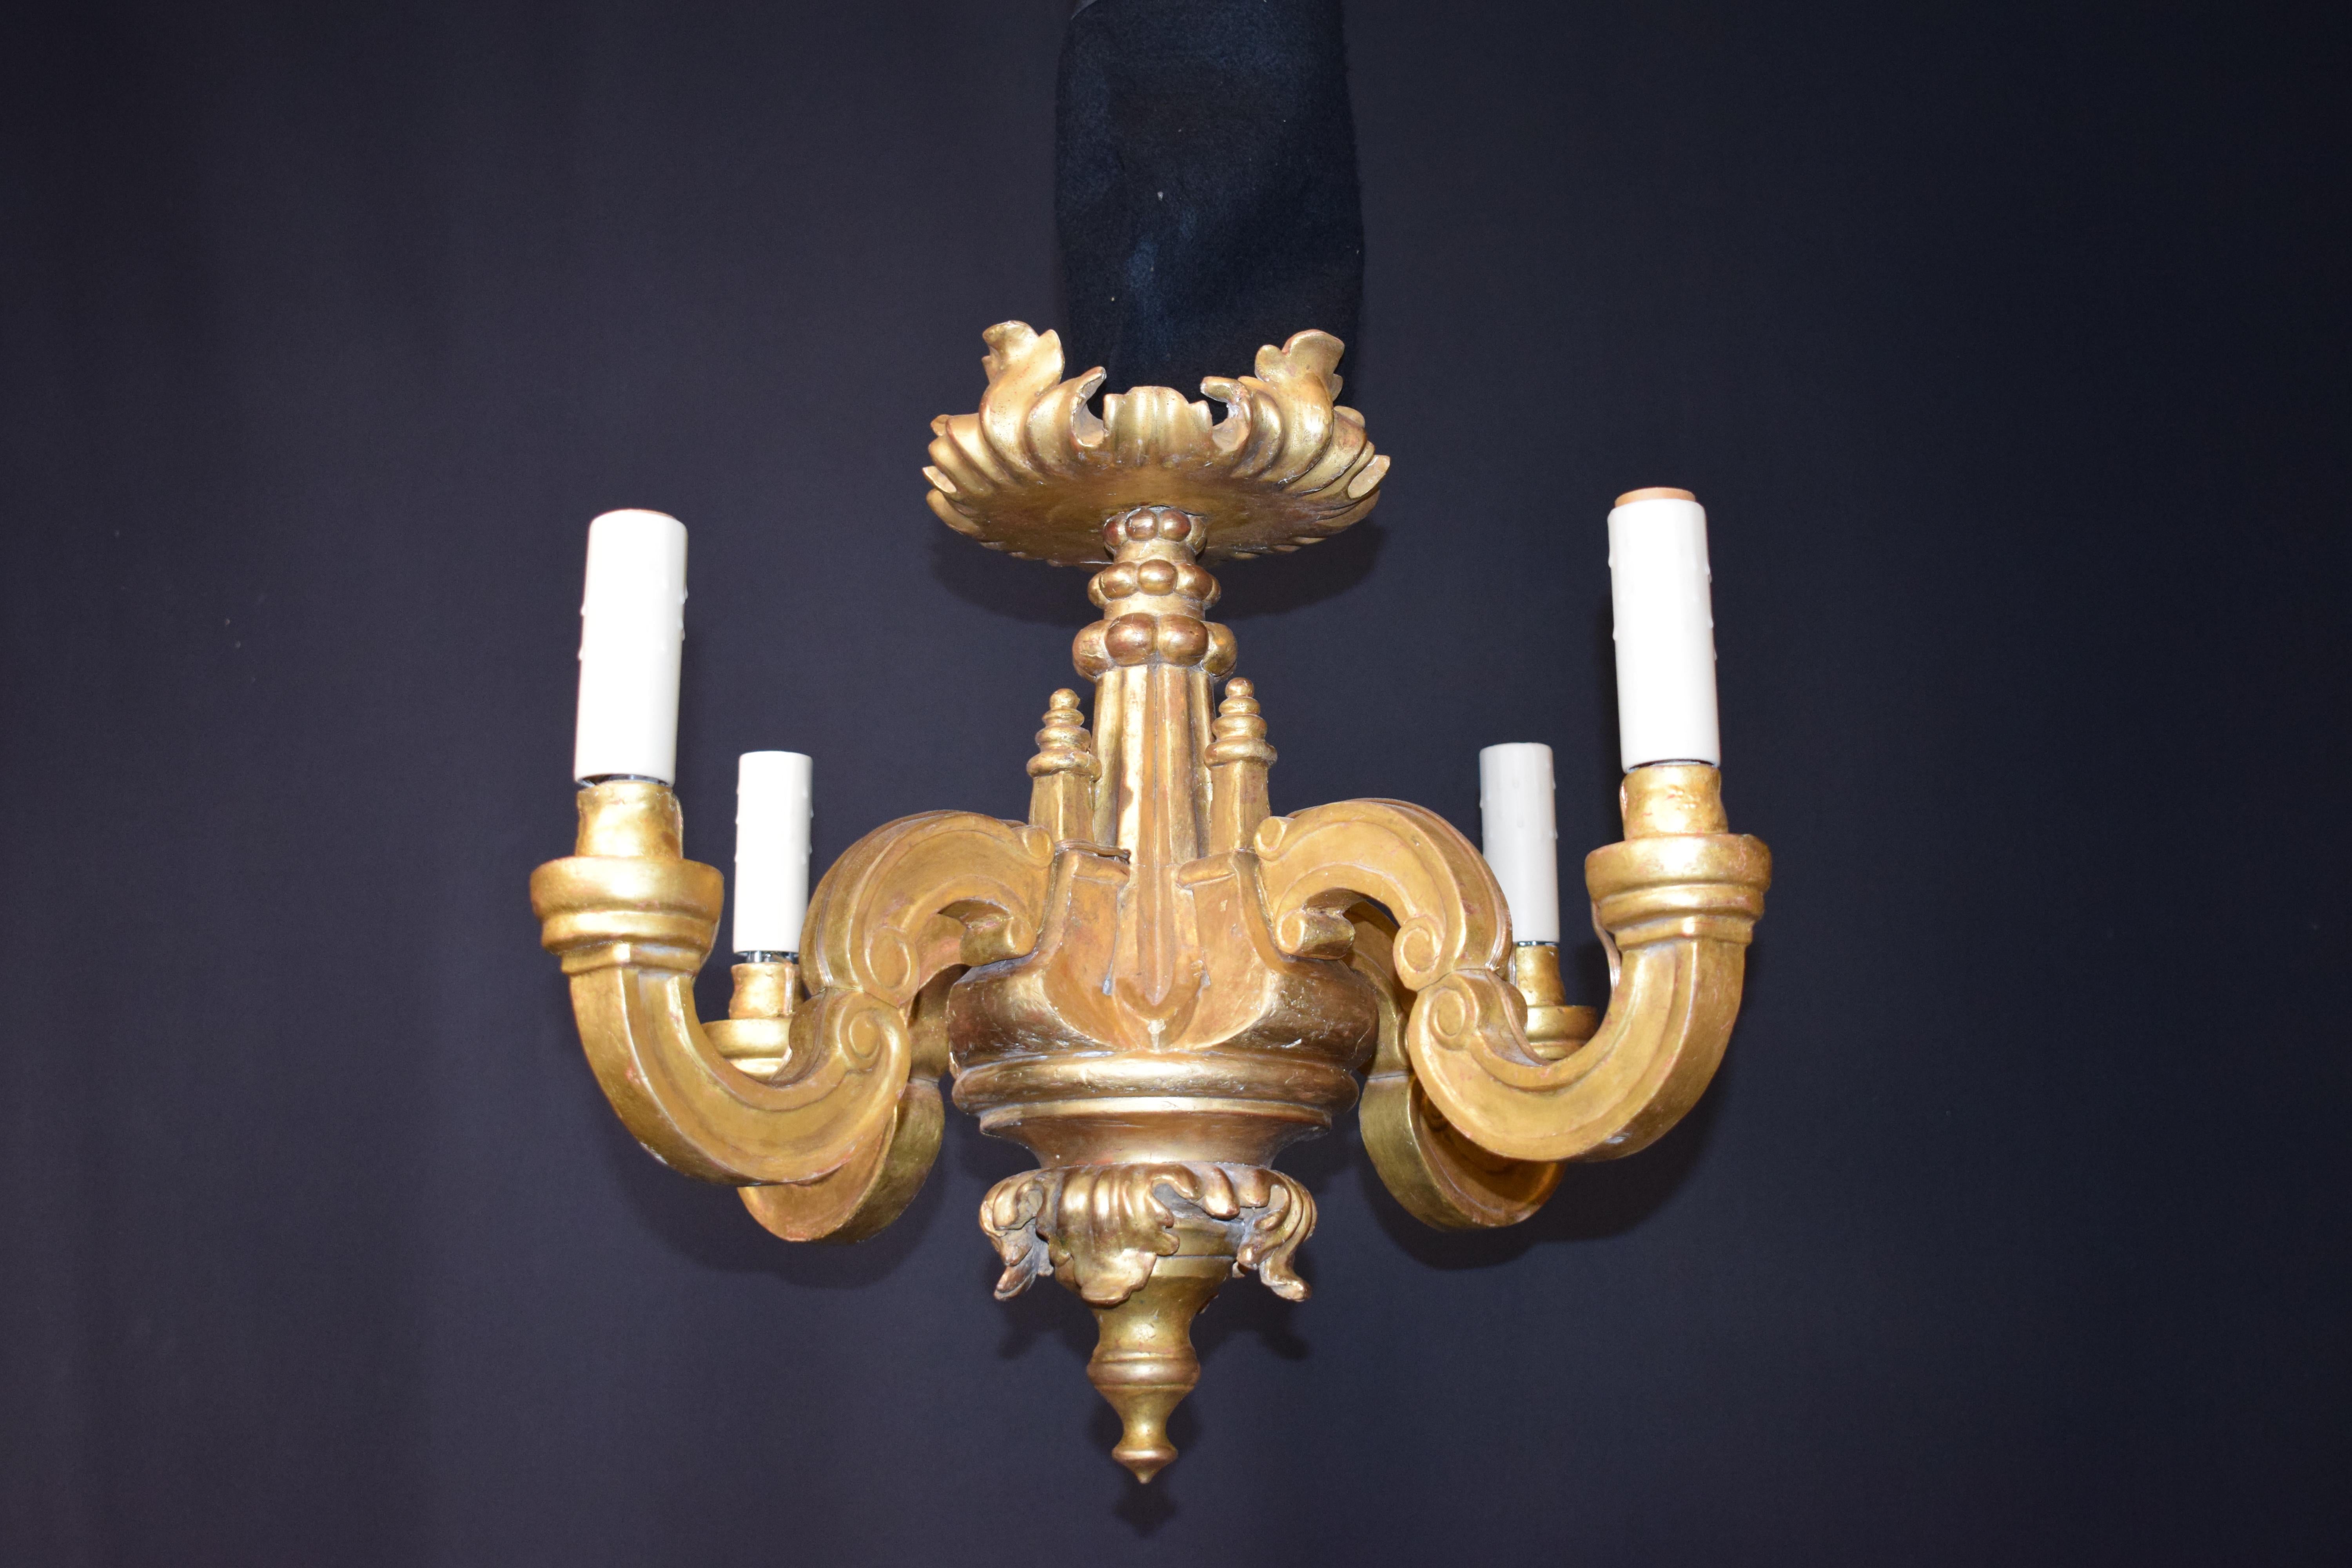 Un très beau lustre de style Louis XVI en bois sculpté et doré, dorure originale de 24 carats. Fait pour les bougies maintenant électrifiées. 4 lumières.
Dimensions : Hauteur 19 1/2